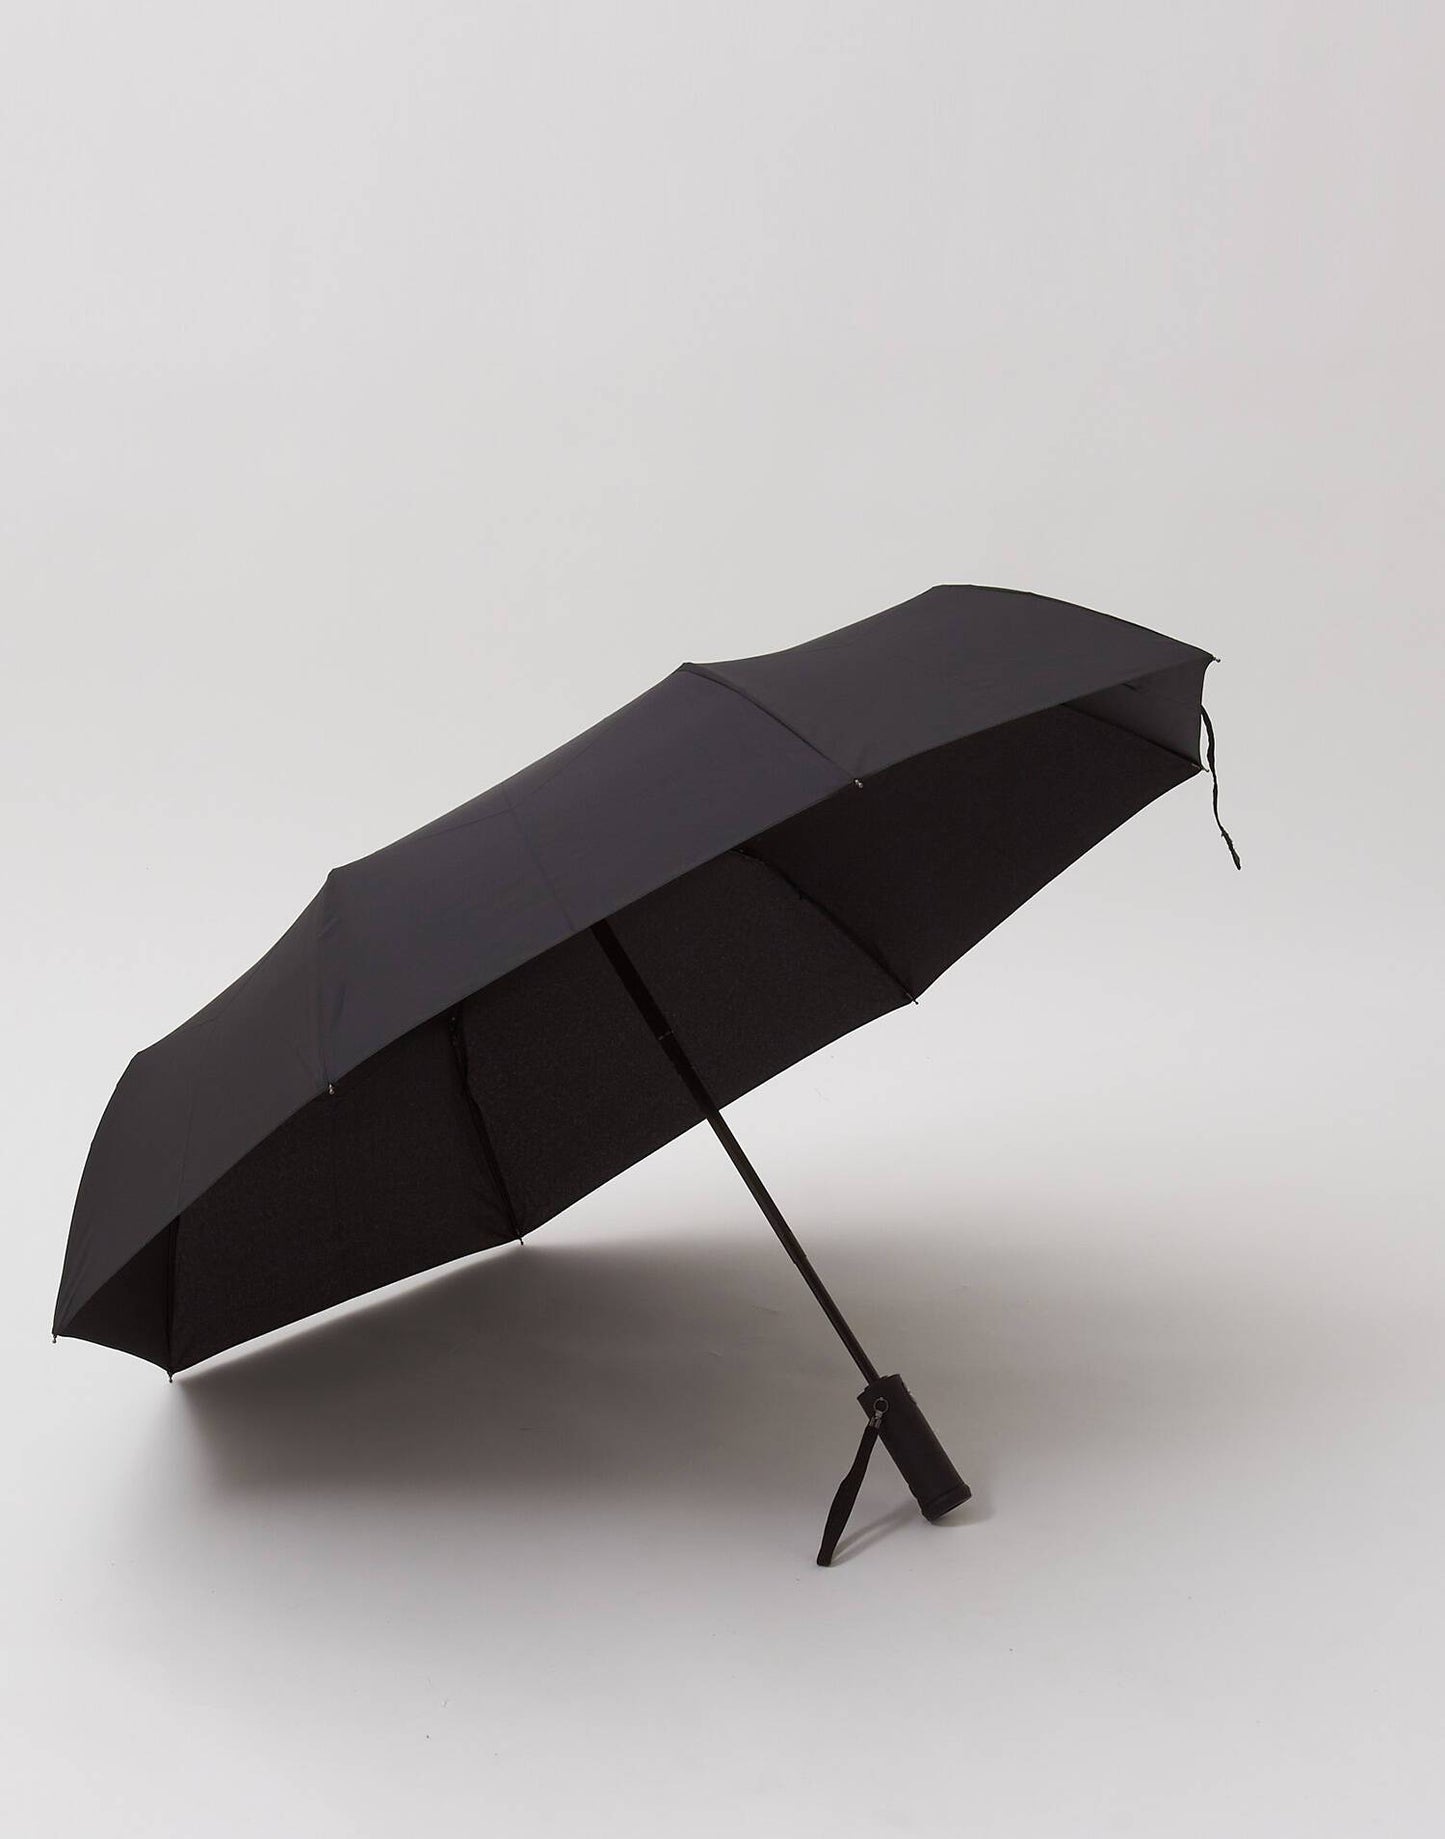 Leichter faltender Regenschirm